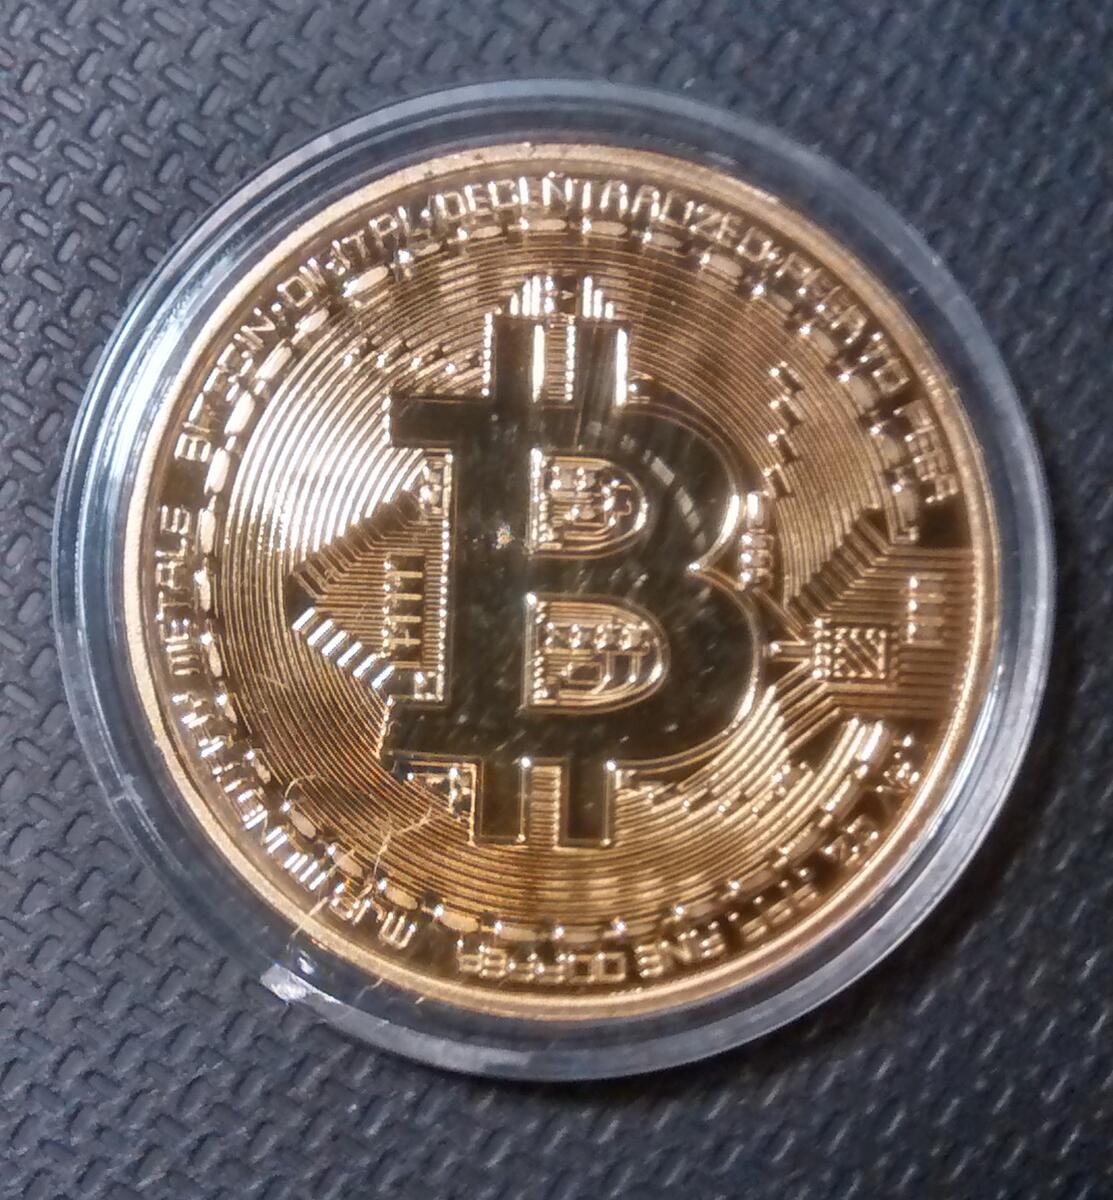 Dekorační mince se znakem Bitcoinu V52 - PoštovnéZDARMA.cz